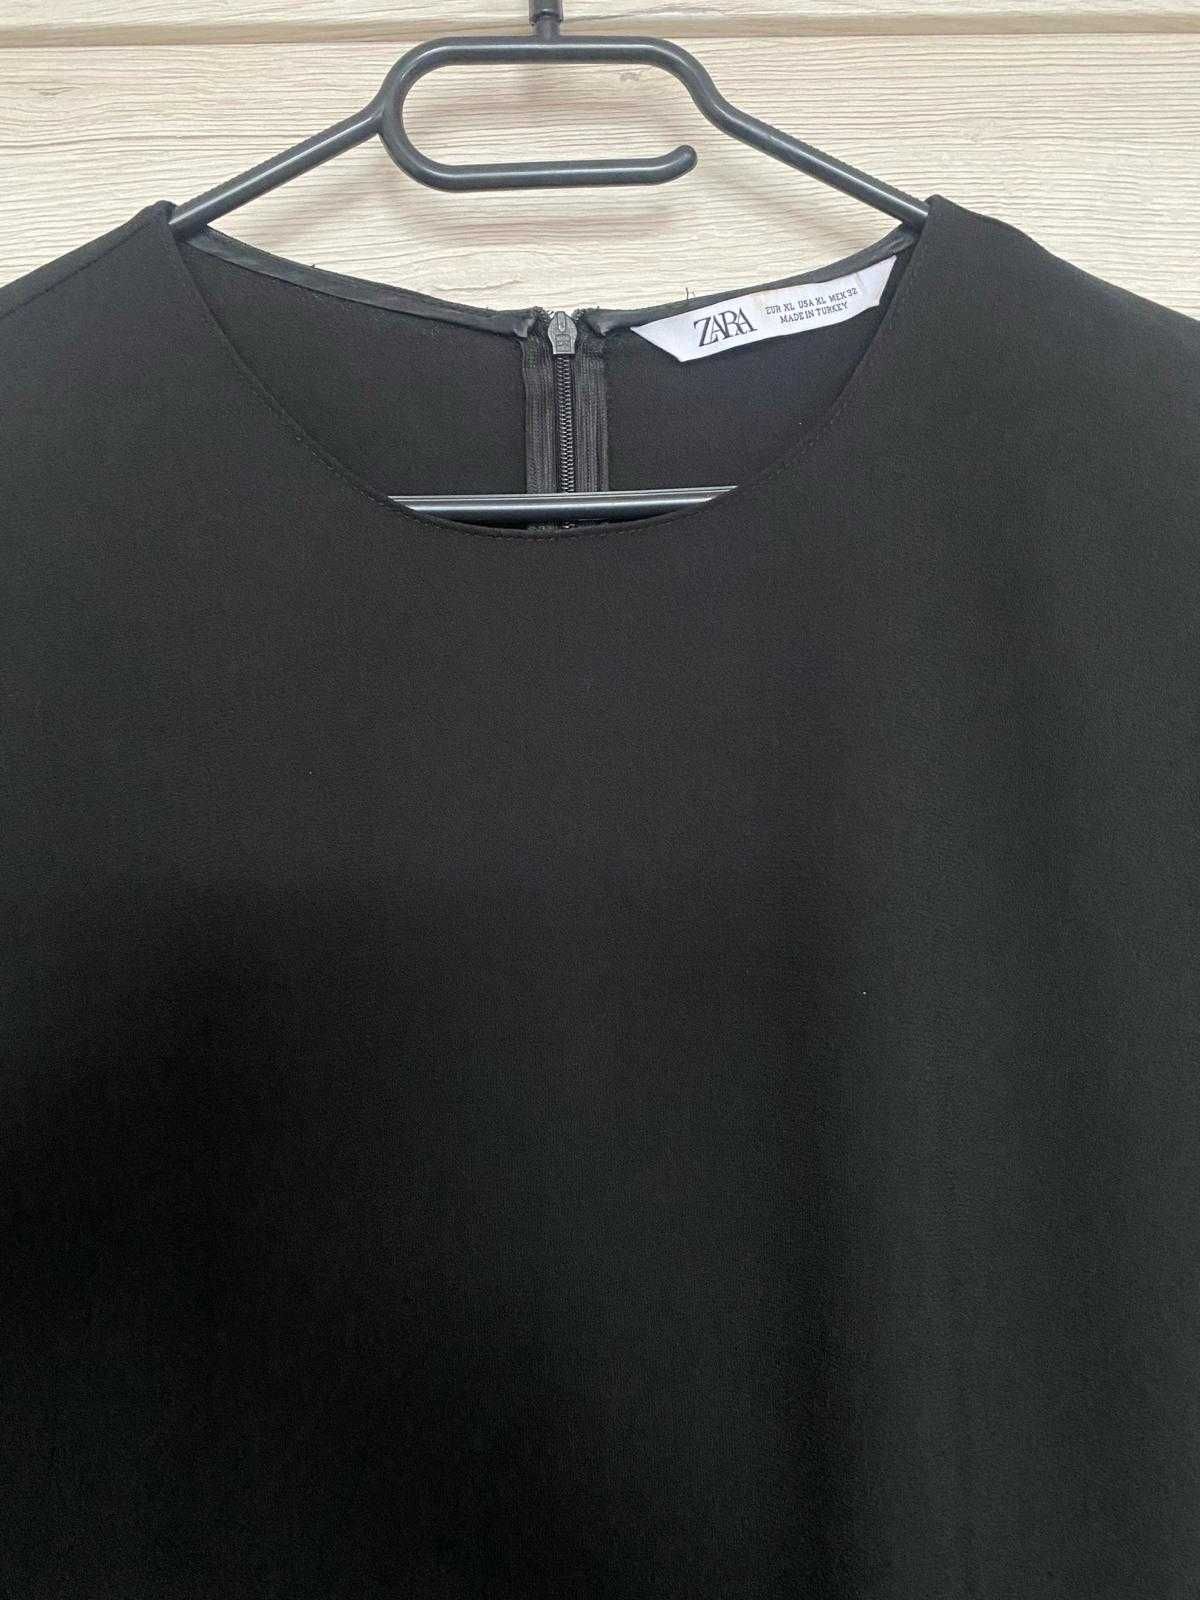 Sukienka ZARA r. XL / jak nowa / czarna, prosta z plisami po boku